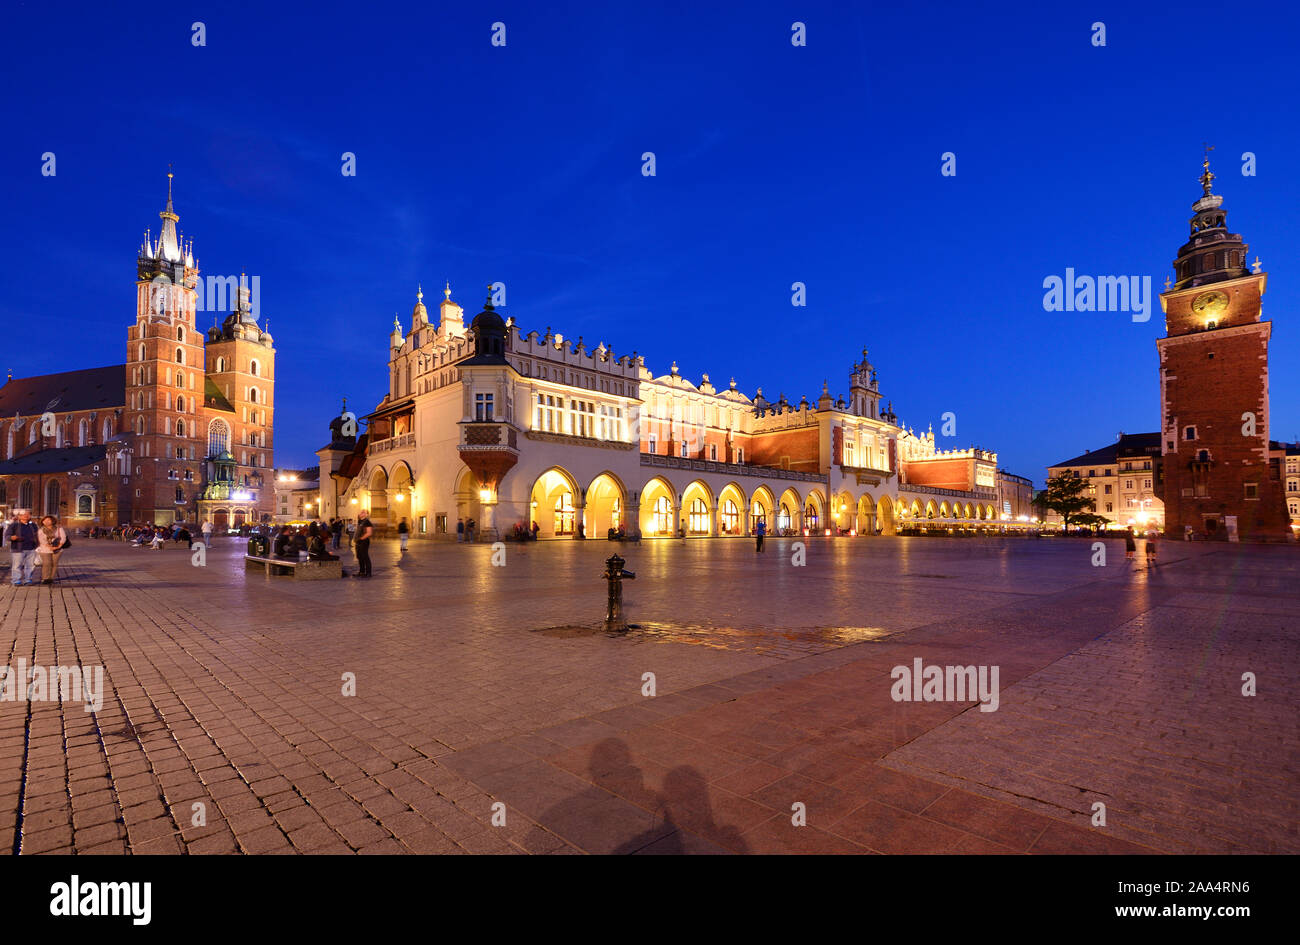 La place du marché (Rynek) de la vieille ville de Cracovie, Site du patrimoine mondial de l'Unesco. Cracovie, Pologne Banque D'Images